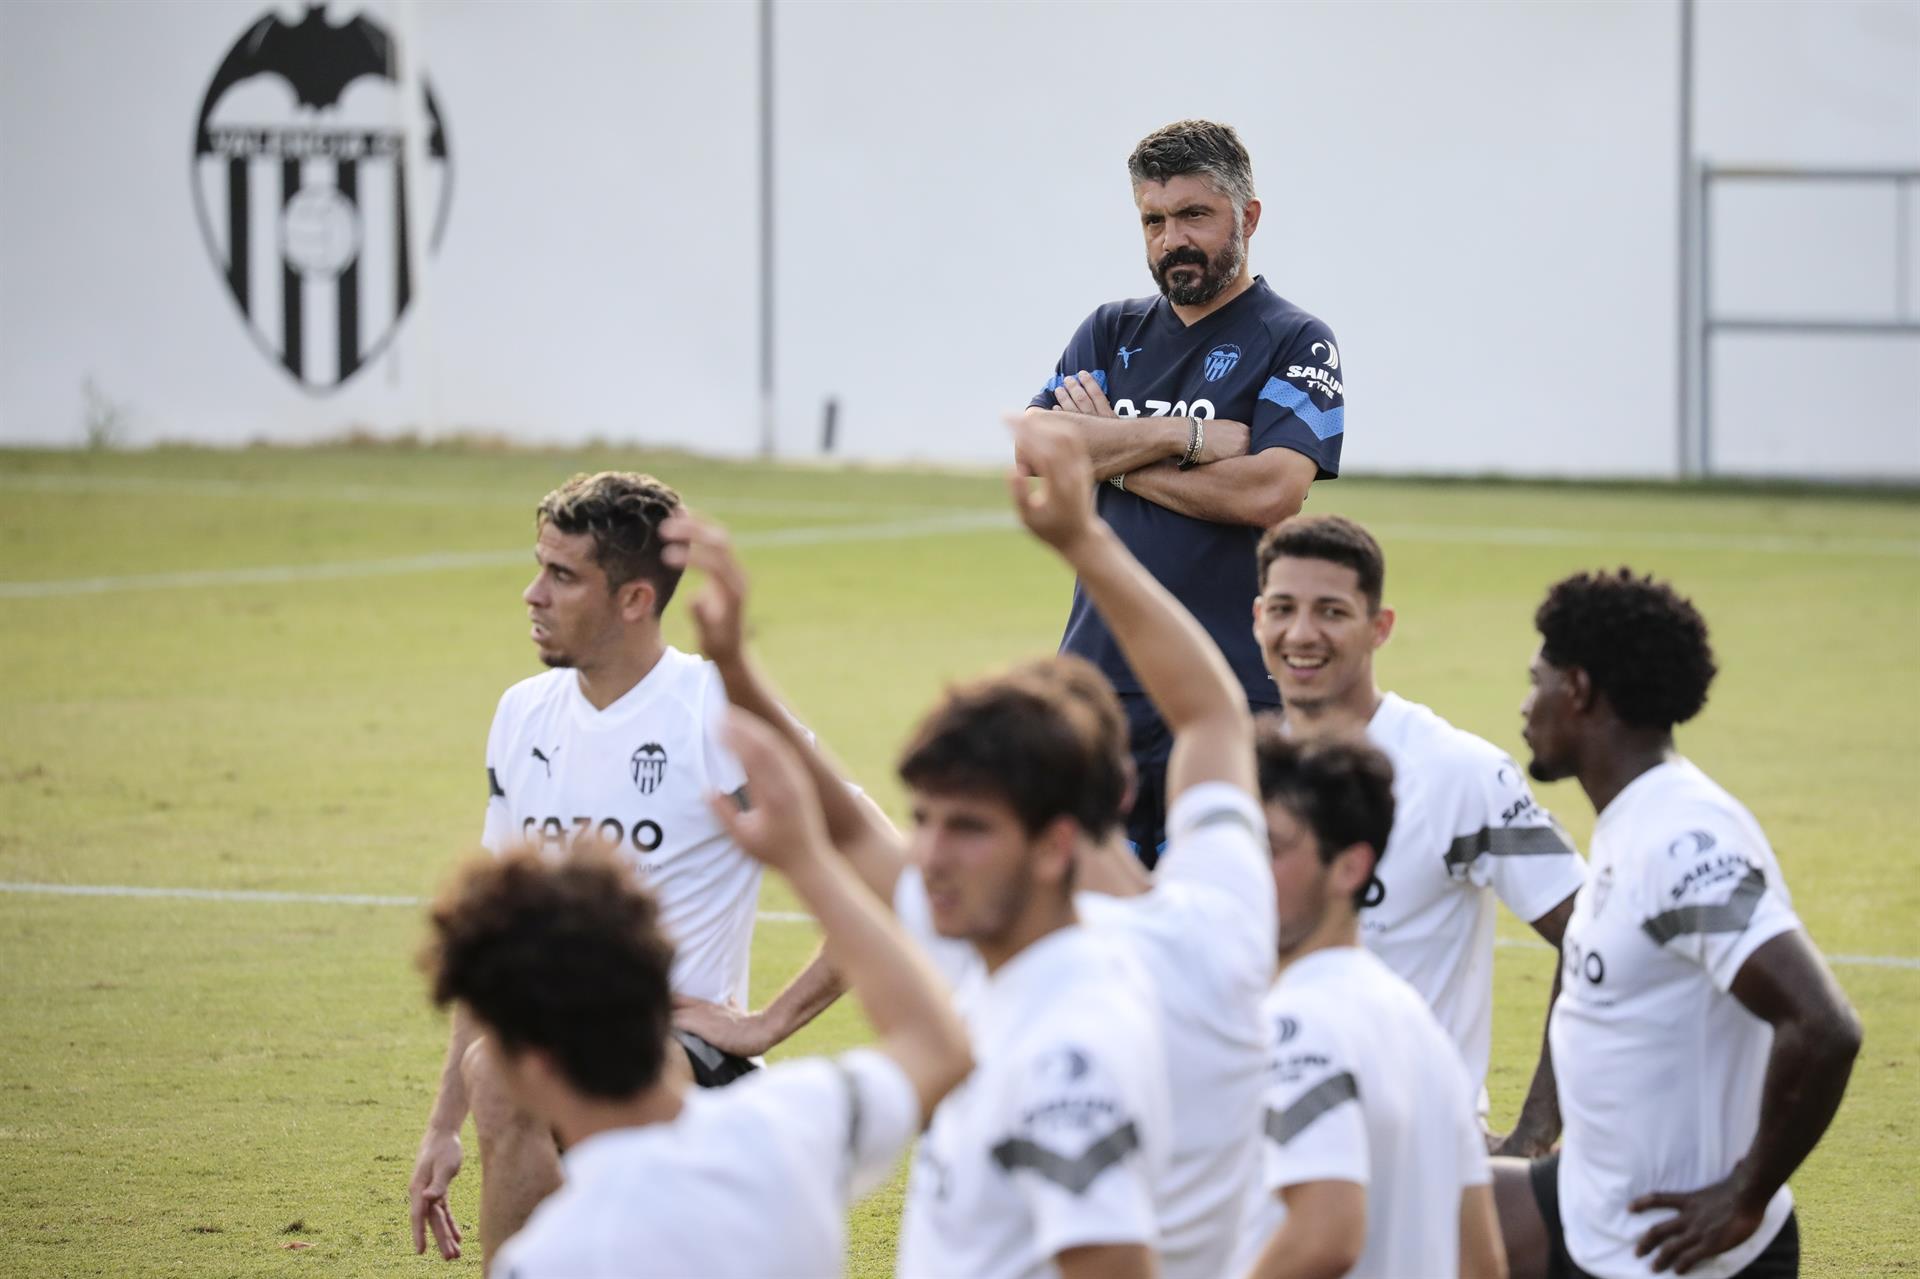 El técnico del Valencia CF, Gennaro Gattuso, observa a sus jugadores durante la sesión de entrenamiento. EFE/Ana Escobar/Archivo